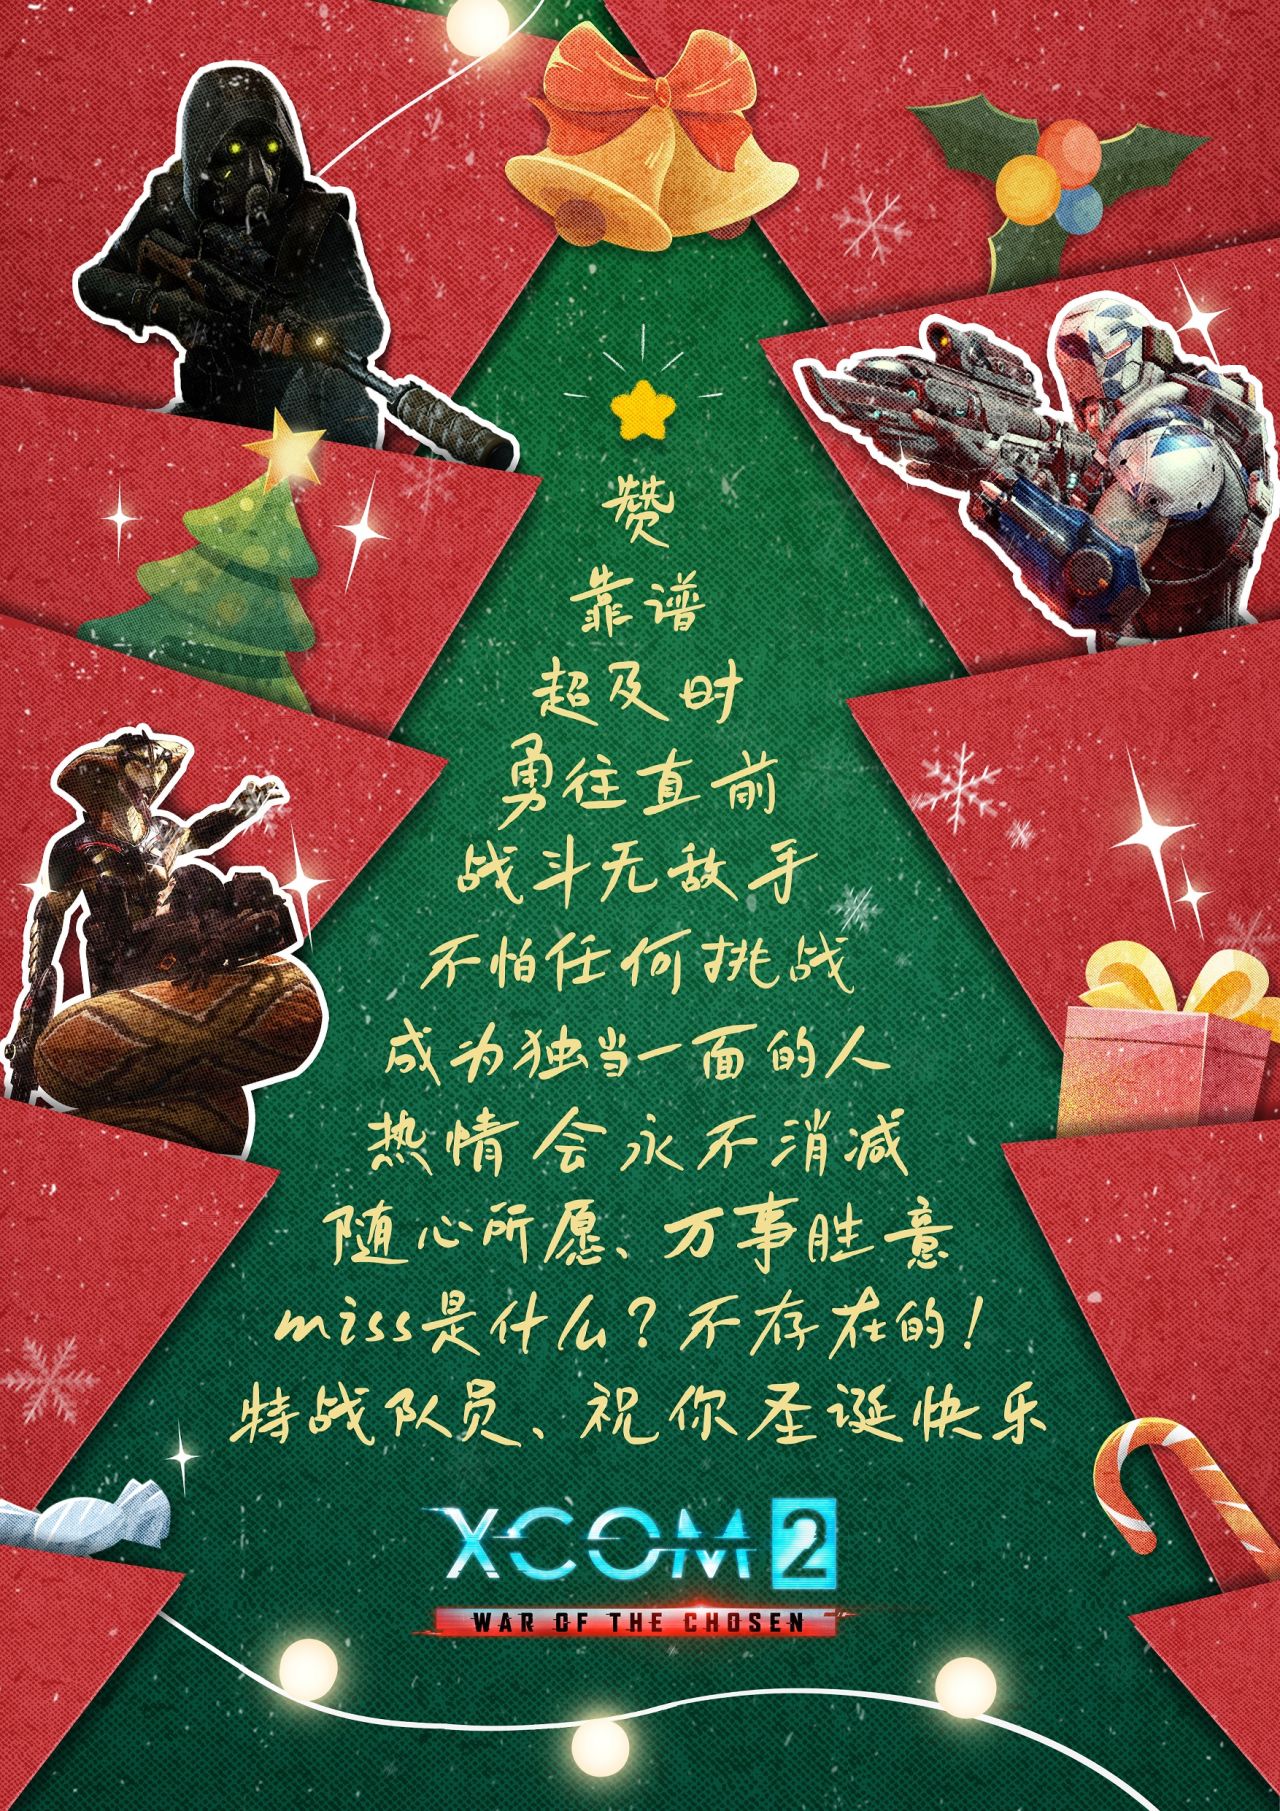 【评论抽雷柏机械键盘】XCOM2特战队员的圣诞祝福